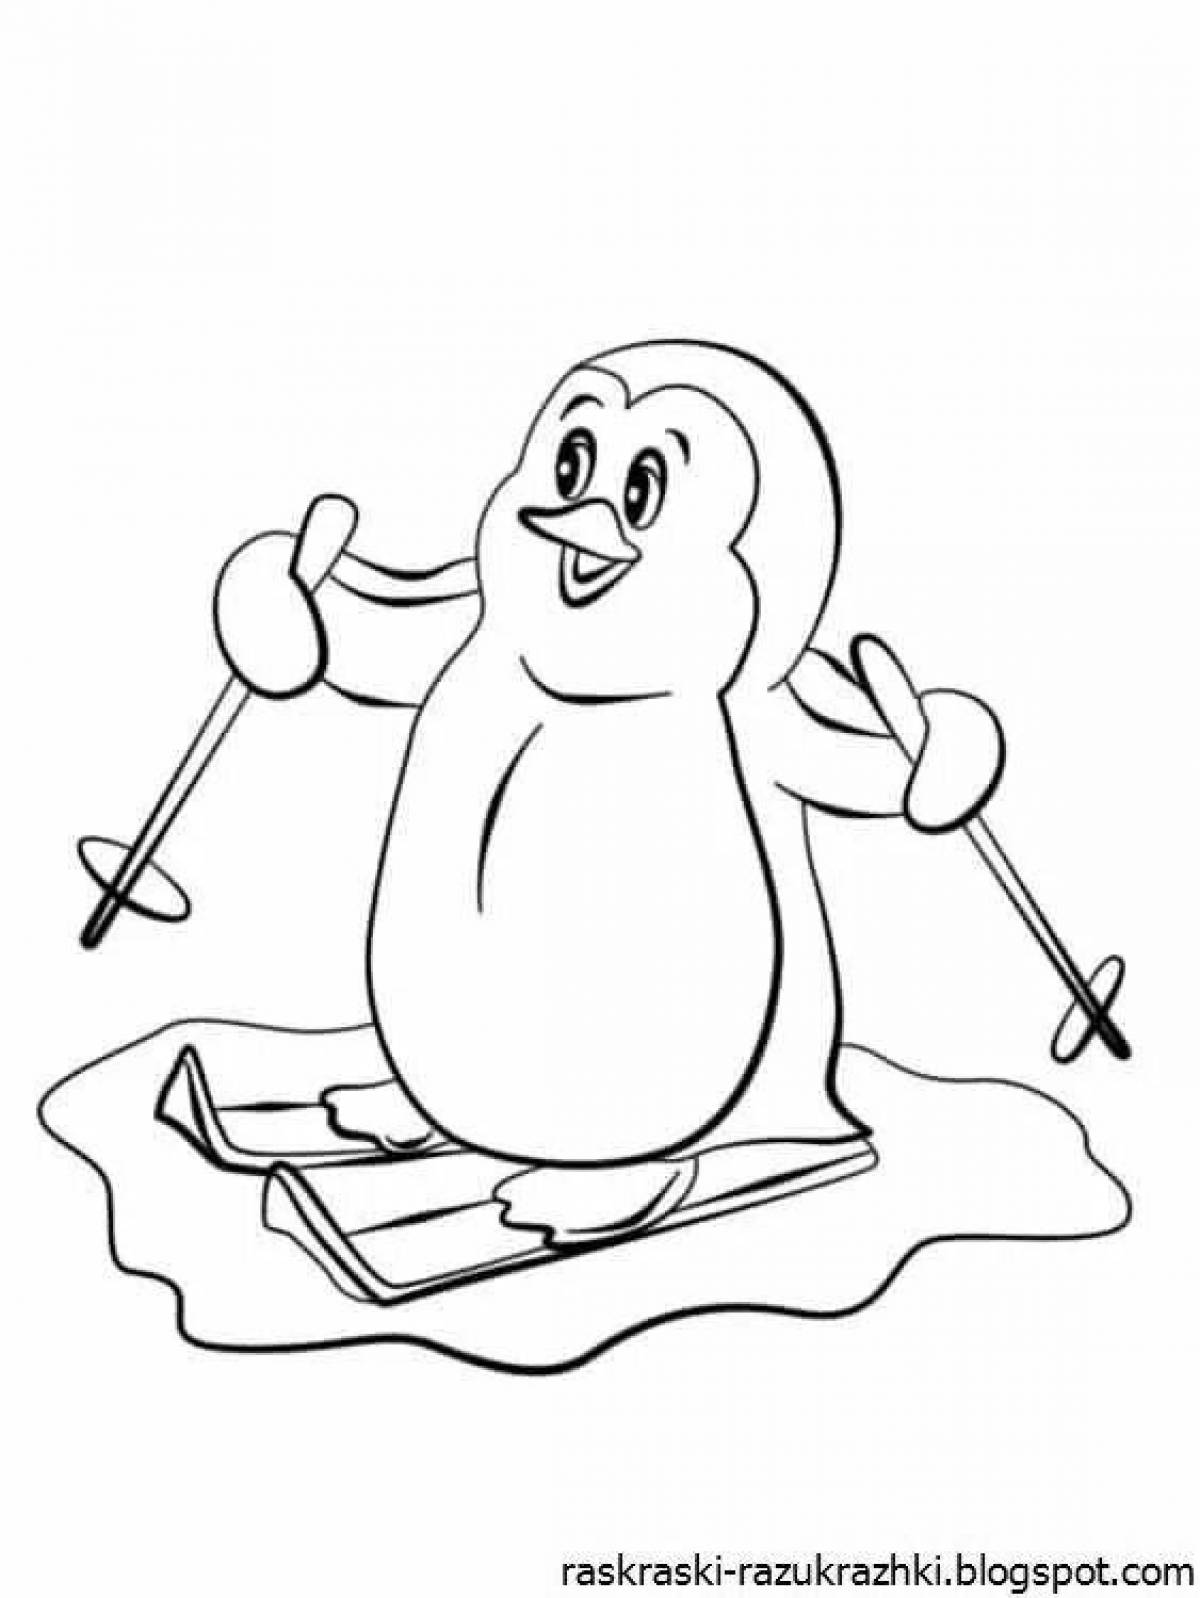 Увлекательная раскраска пингвинов для детей